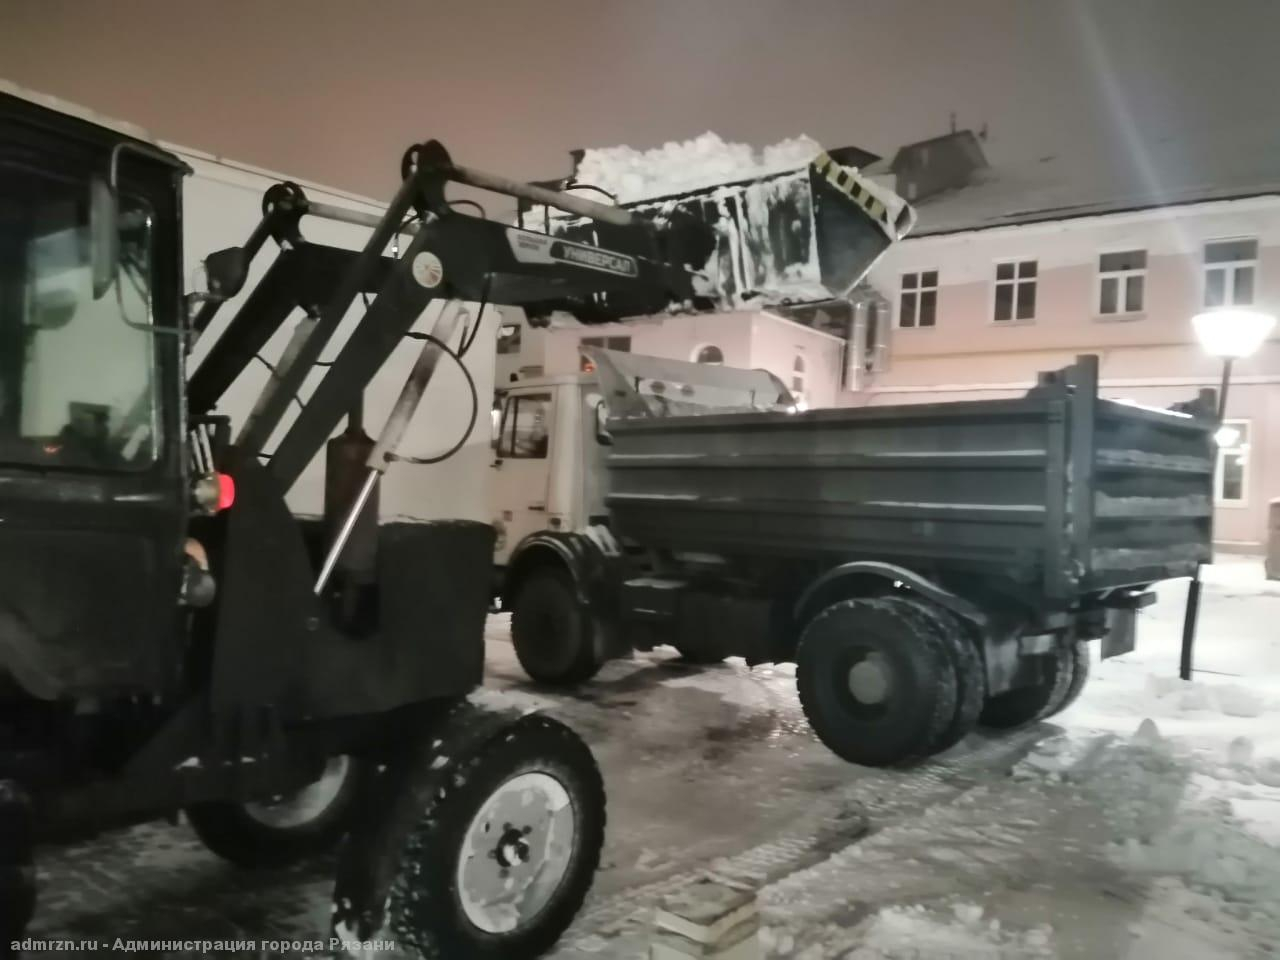 Работали в ночь: рязанская мэрия рассказала о борьбе со снегопадом